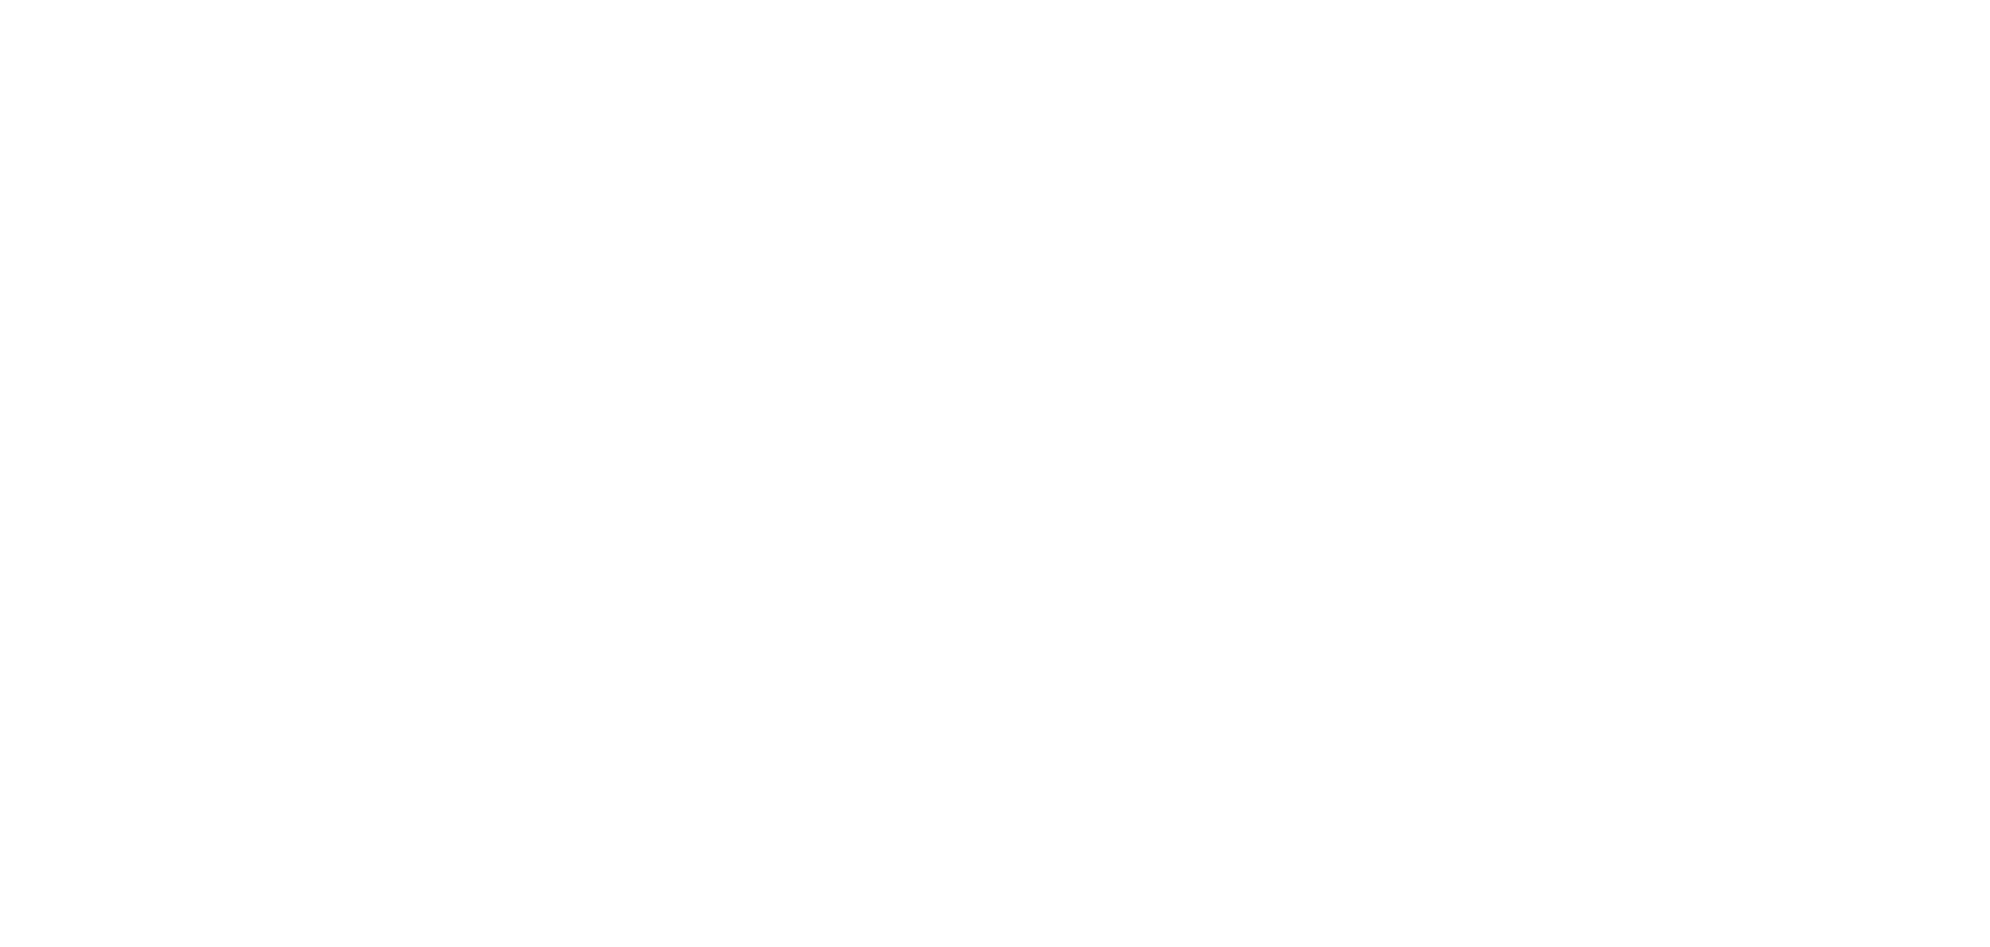 logo-cnn